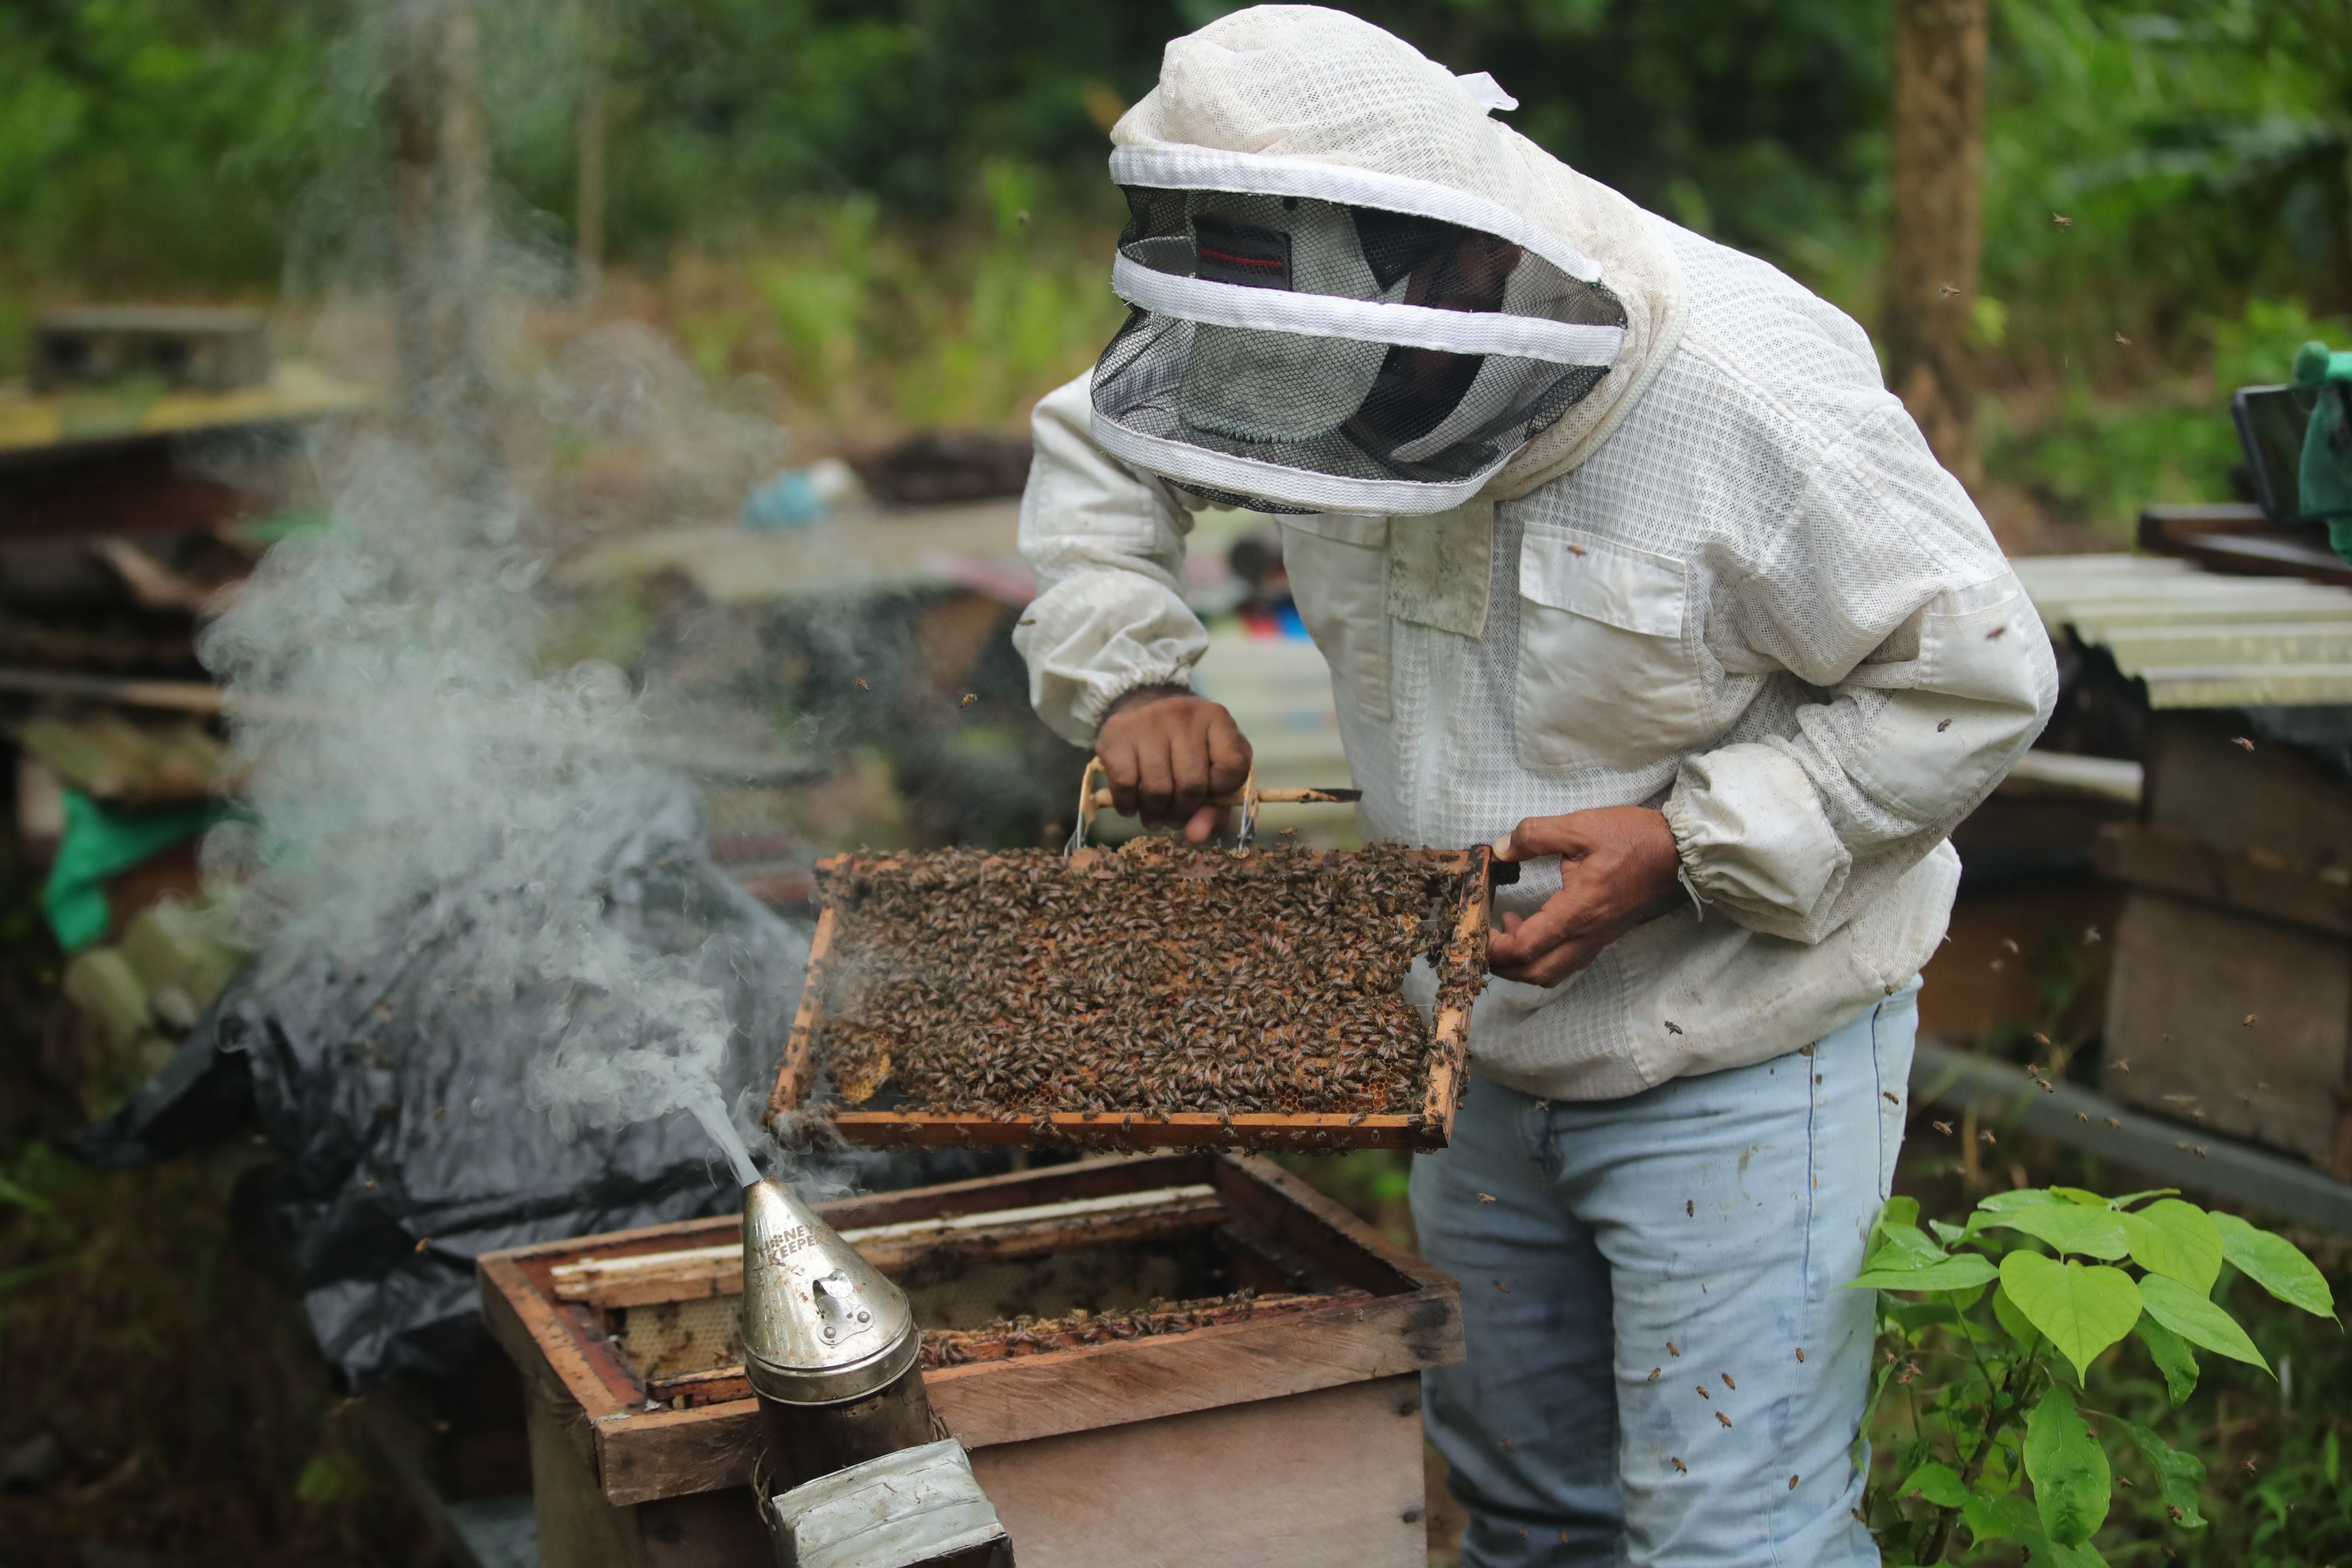 Mambo cuida de abejas cordovan y africanizadas. Foto: Alonso Tenorio.